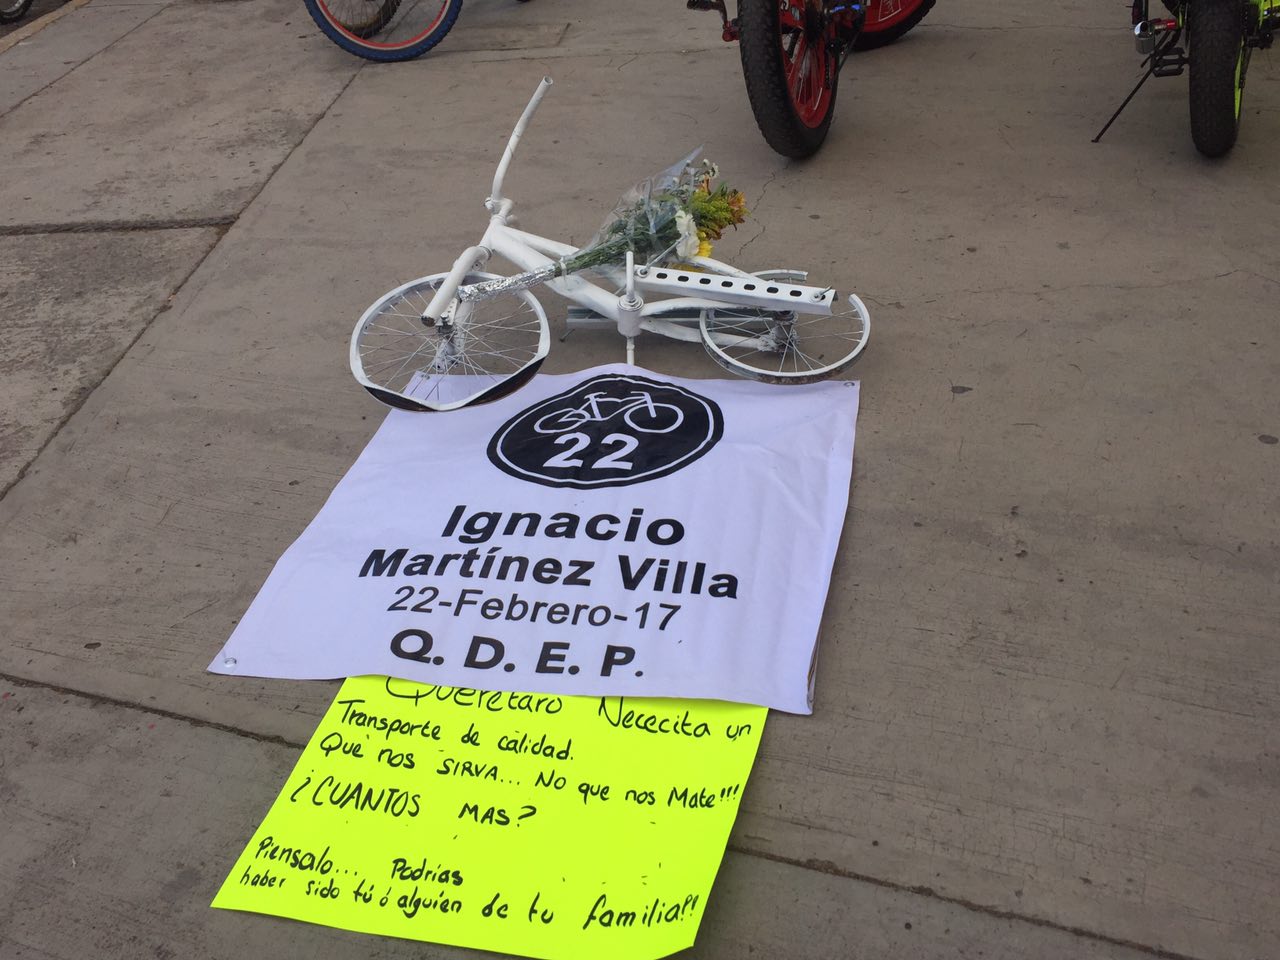  Colocan bici blanca en honor a ciclista atropellado en Zaragoza